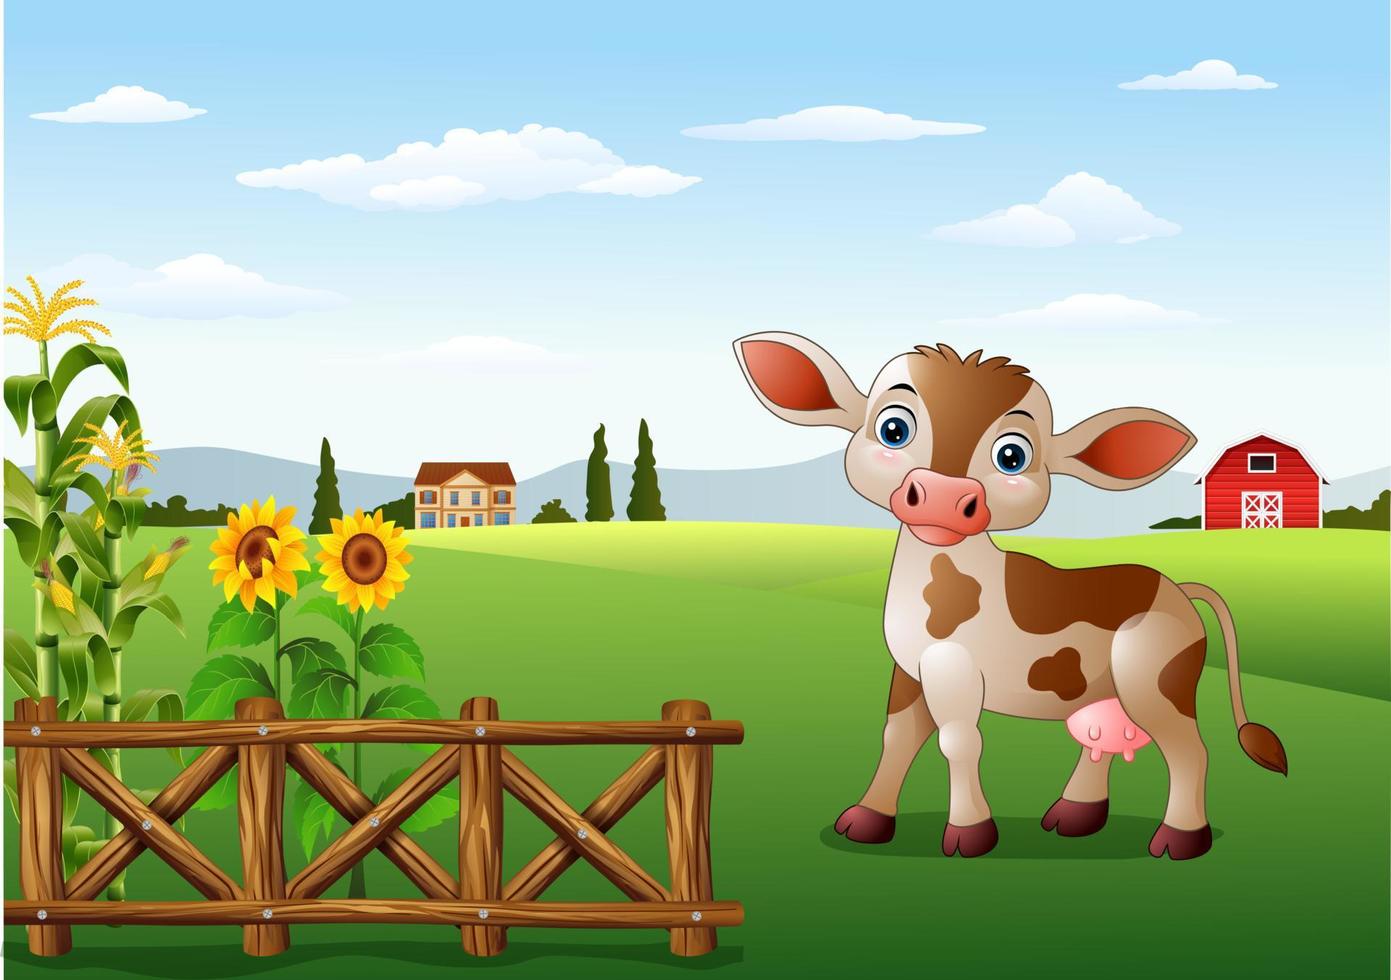 vaca de dibujos animados en el paisaje rural con flores florecientes vector